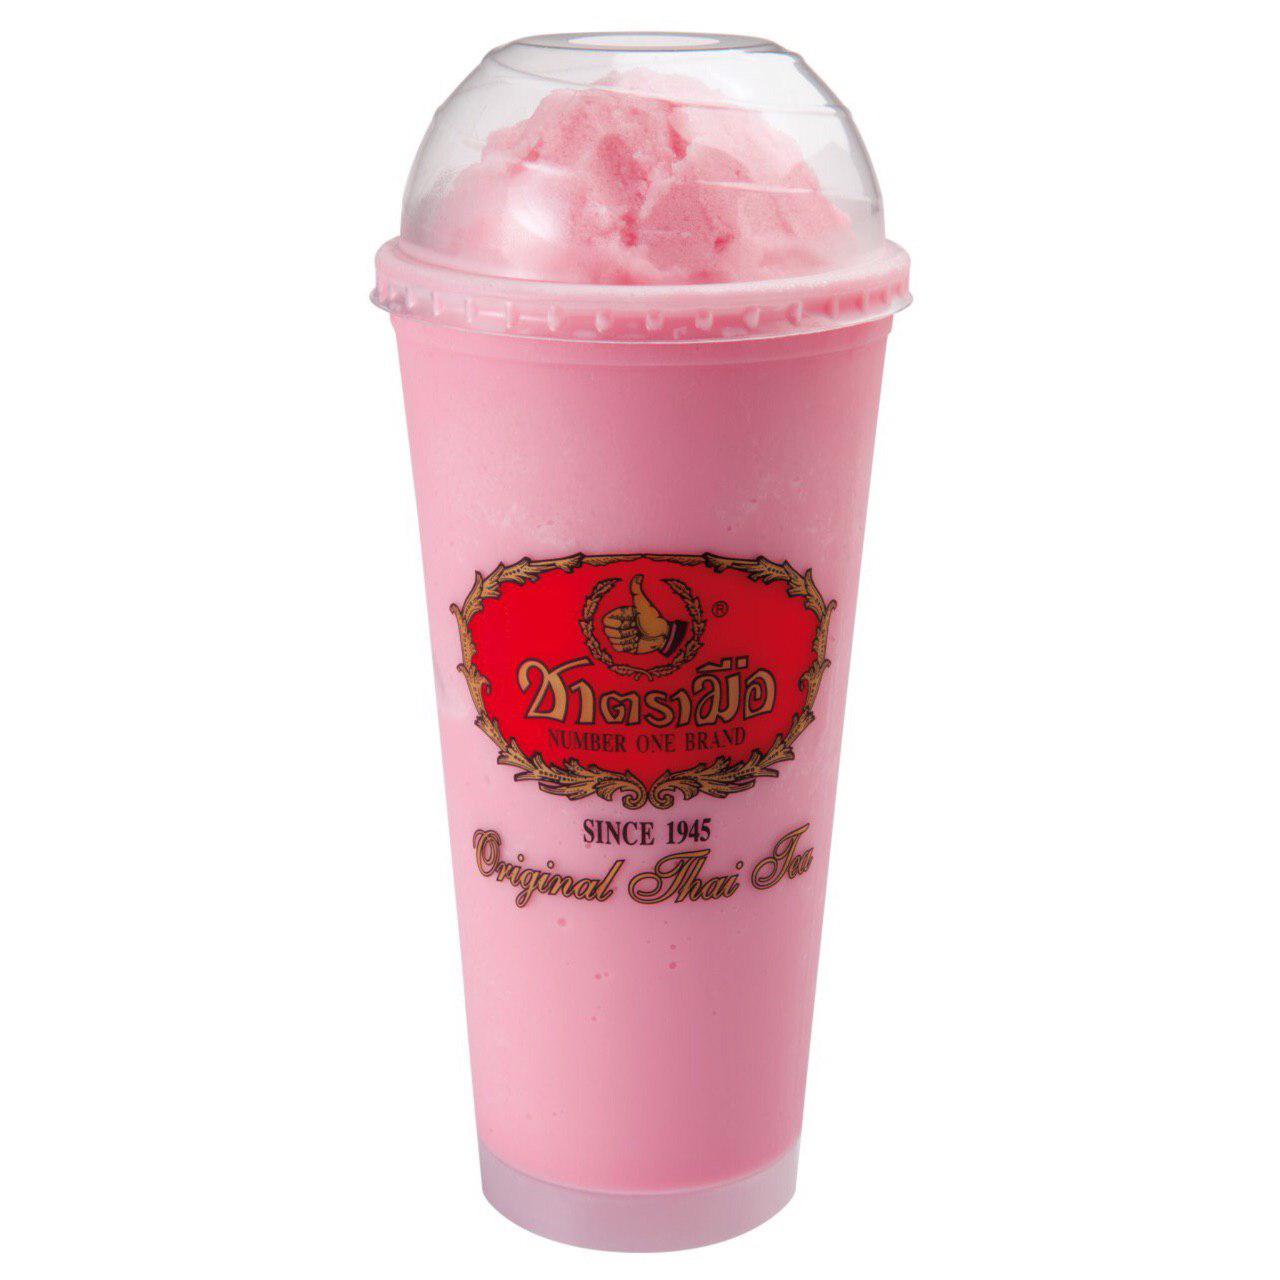 03.Pink Milk Smoothie